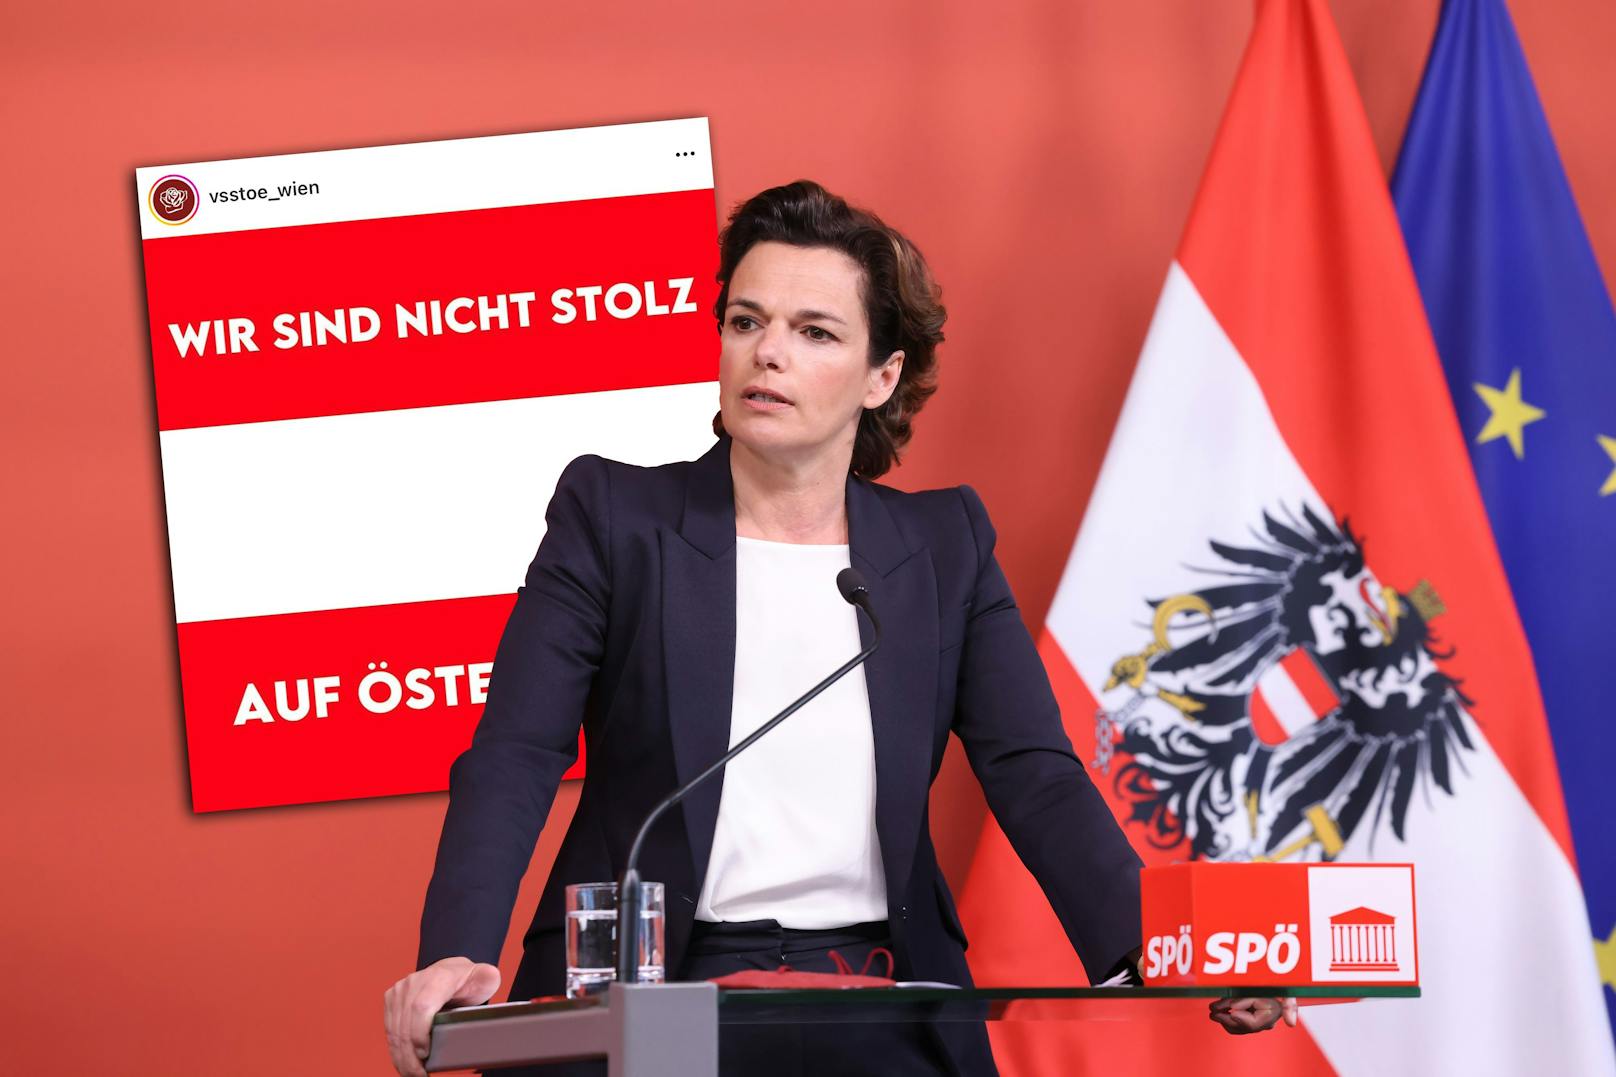 Eine Werbekampagne der SPÖ sorgt derzeit für Aufregung. Die roten Studenten reagieren mit einem weiteren provokanten Sujet.